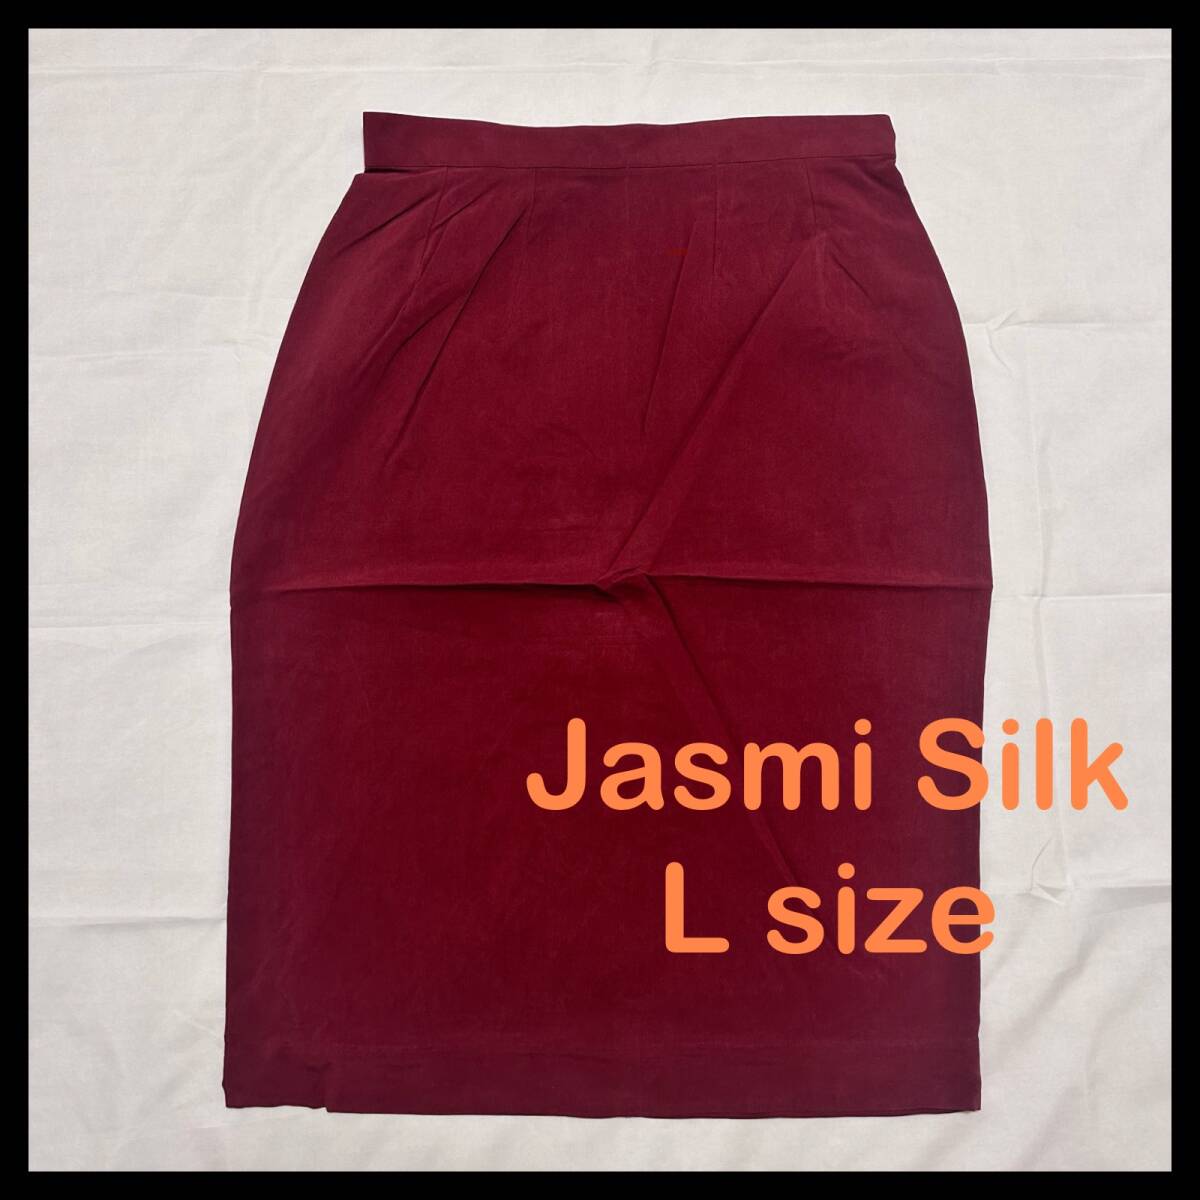 Jasmi Silk シルク100% 膝丈スカート ボルドー Lサイズ 110の画像1